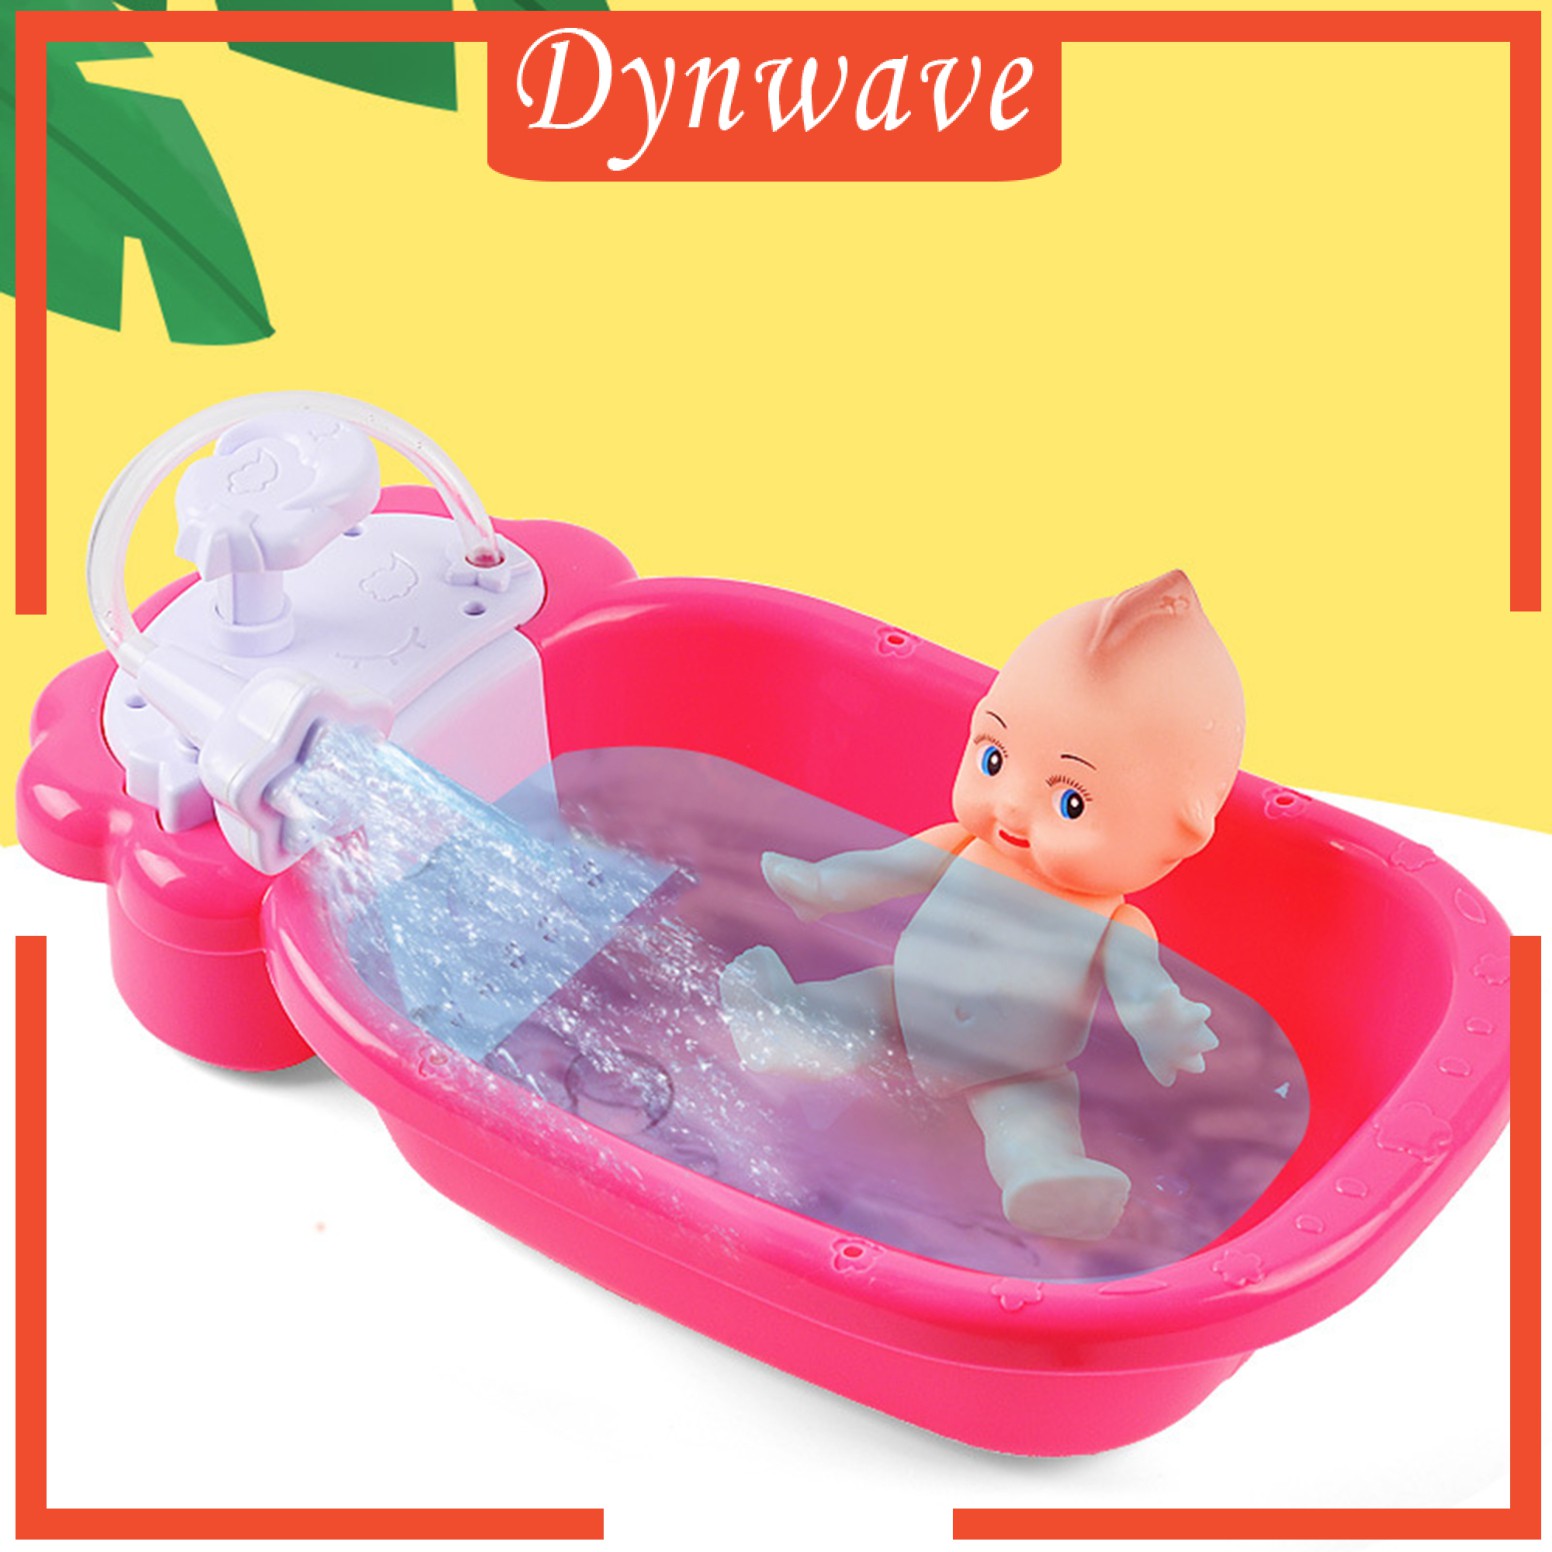 [DYNWAVE] Doll Bath Play Tub with Shower Pretend Play Infant Baby Kids Doll Toy Bathtub